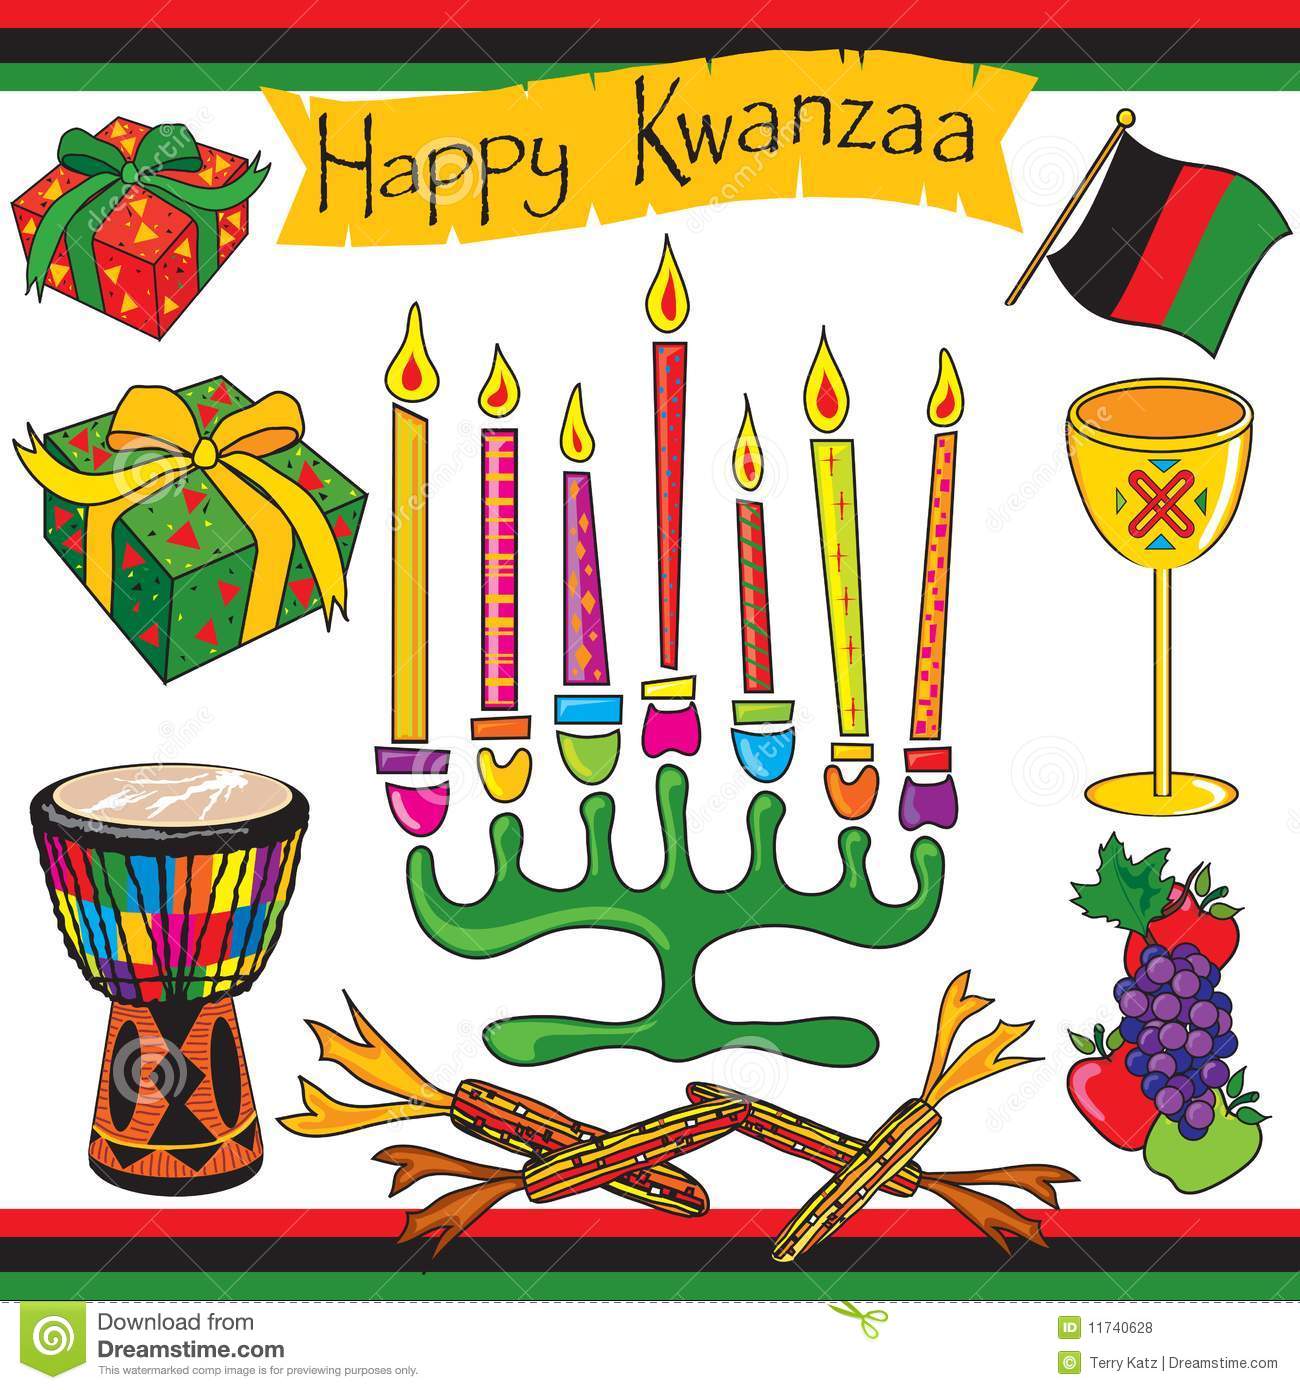 Happy Kwanzaa clip art and ic - Kwanzaa Clipart